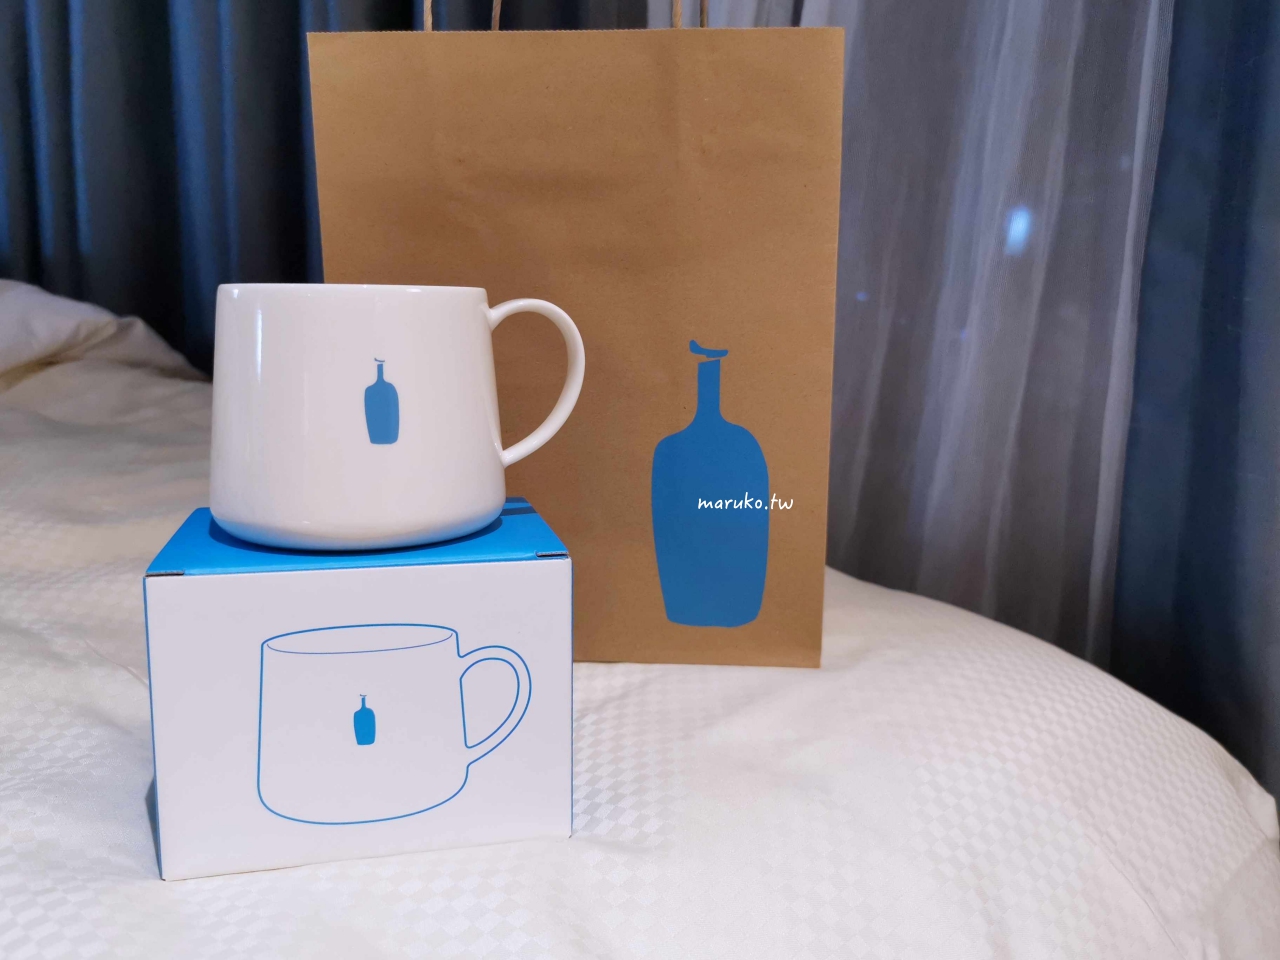 【首爾】Blue Bottle 藍瓶咖啡 可眺望景福宮與韓屋村的三清洞店、工業風聖水洞店、明洞店 @Maruko與美食有個約會